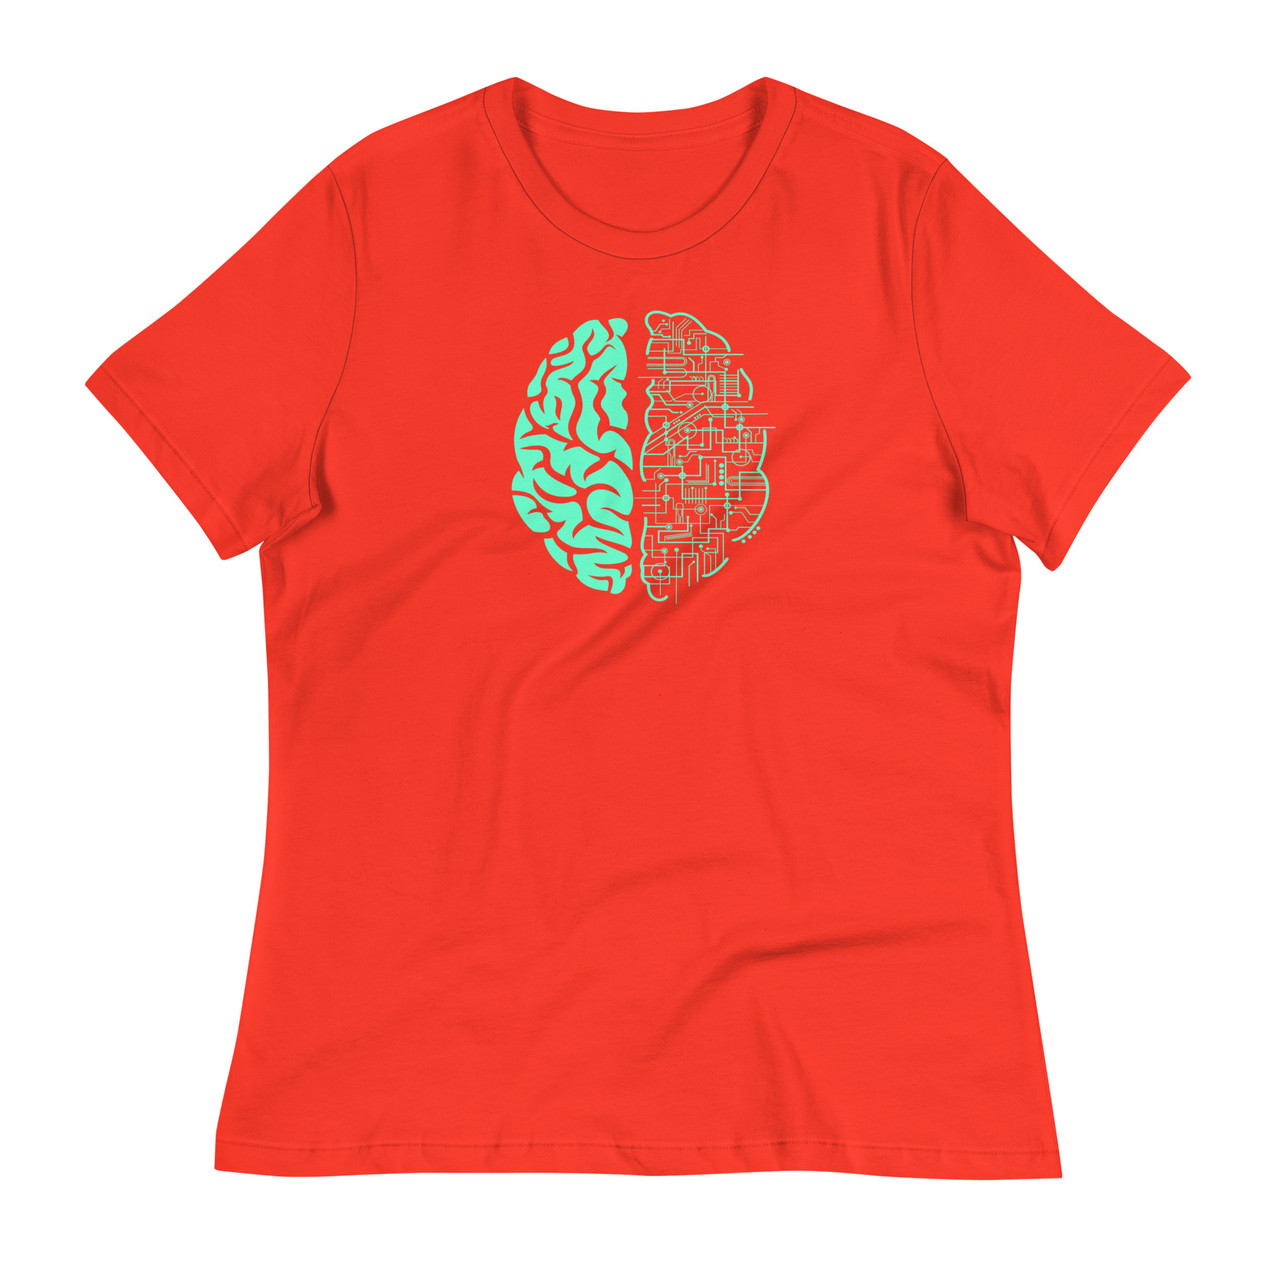 Brain Power Women's Relaxed T-Shirt - Bella + Canvas 6400 